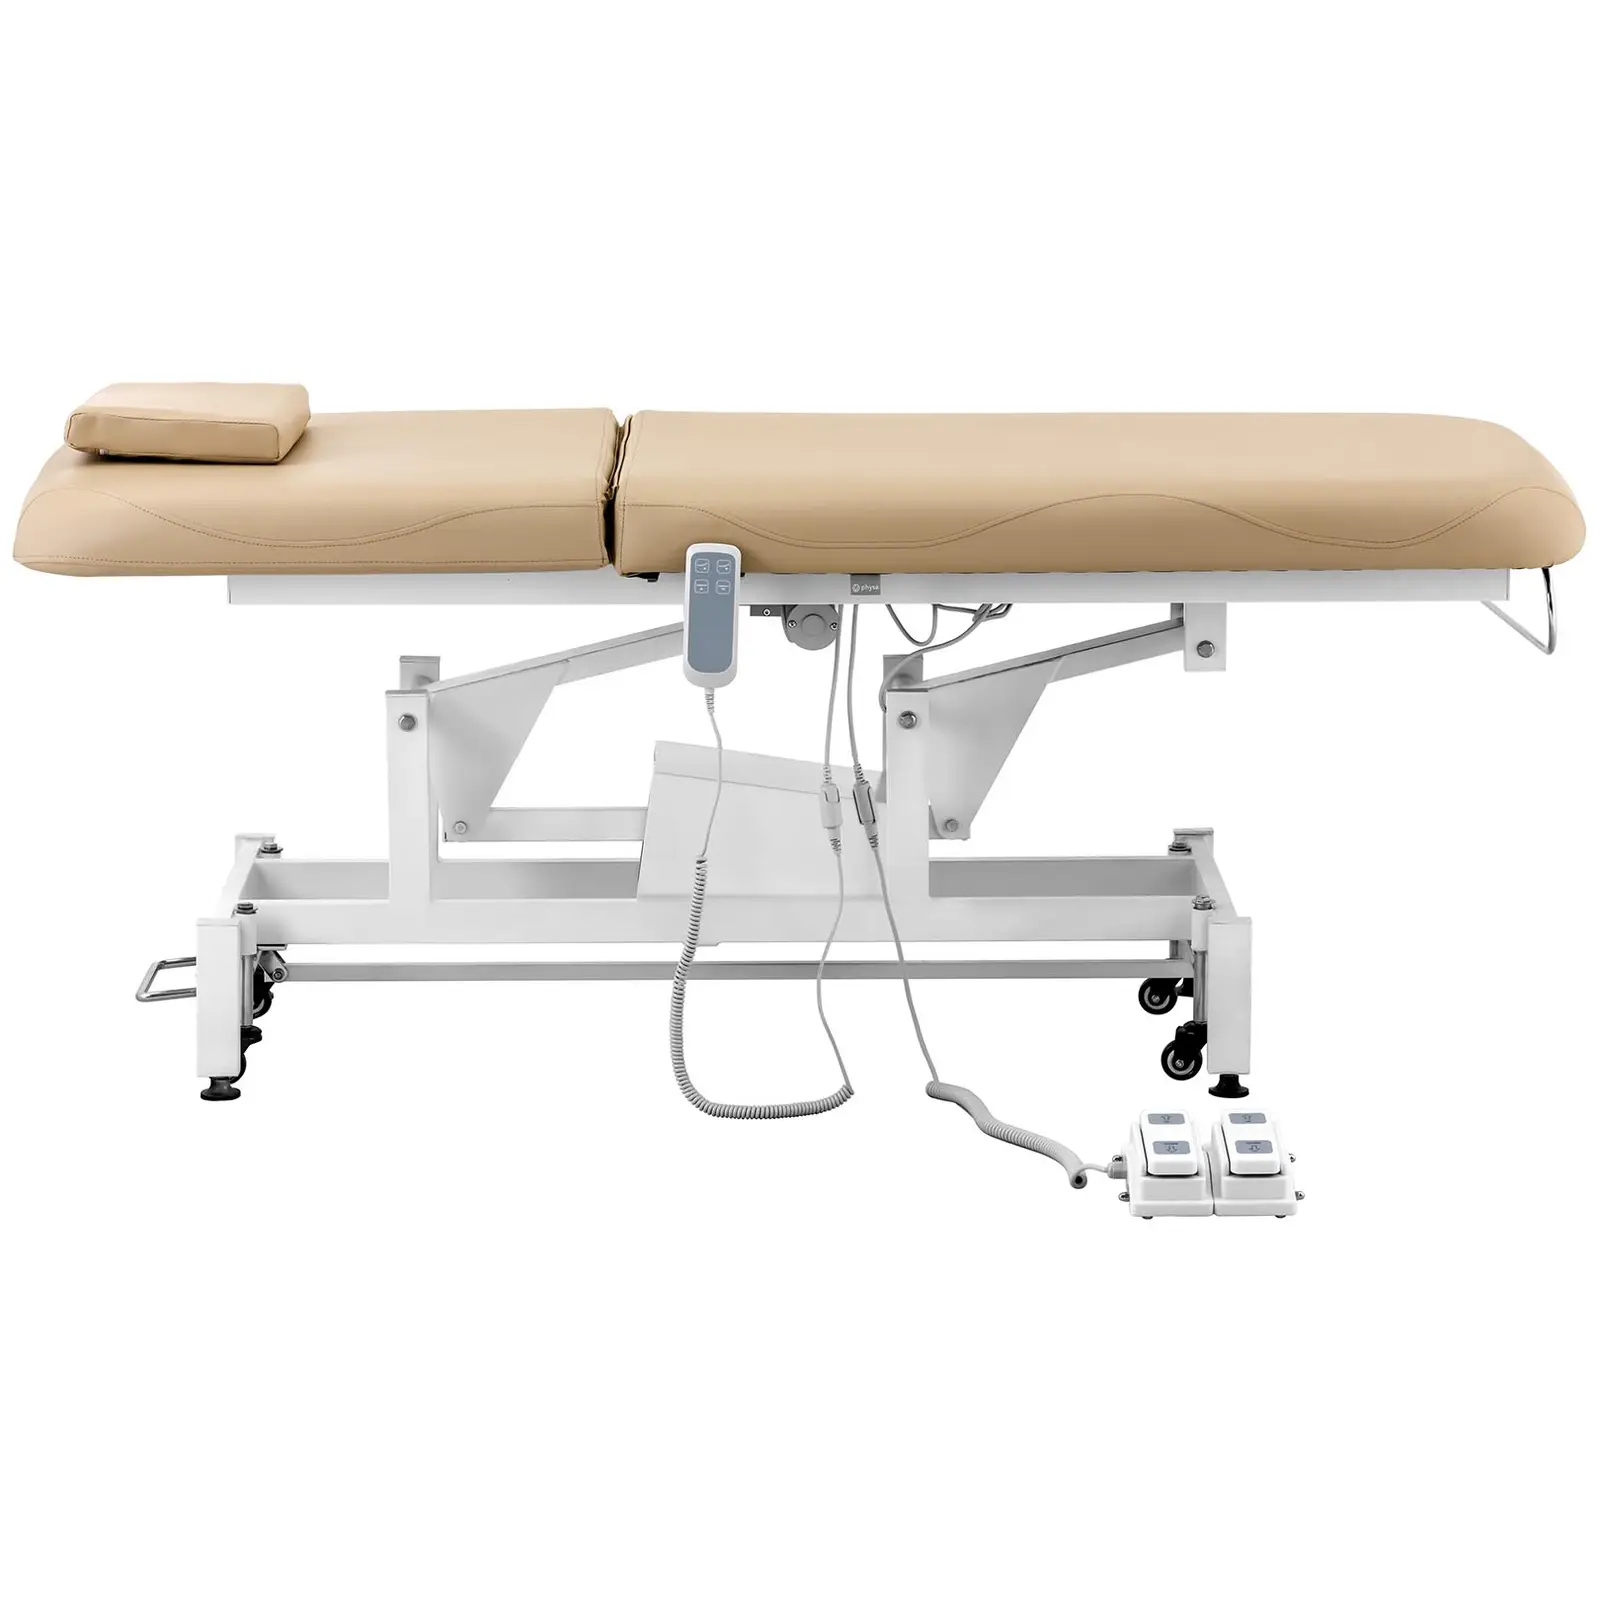 Lettino massaggio elettrico - 2 motori - 150 kg - beige scuro